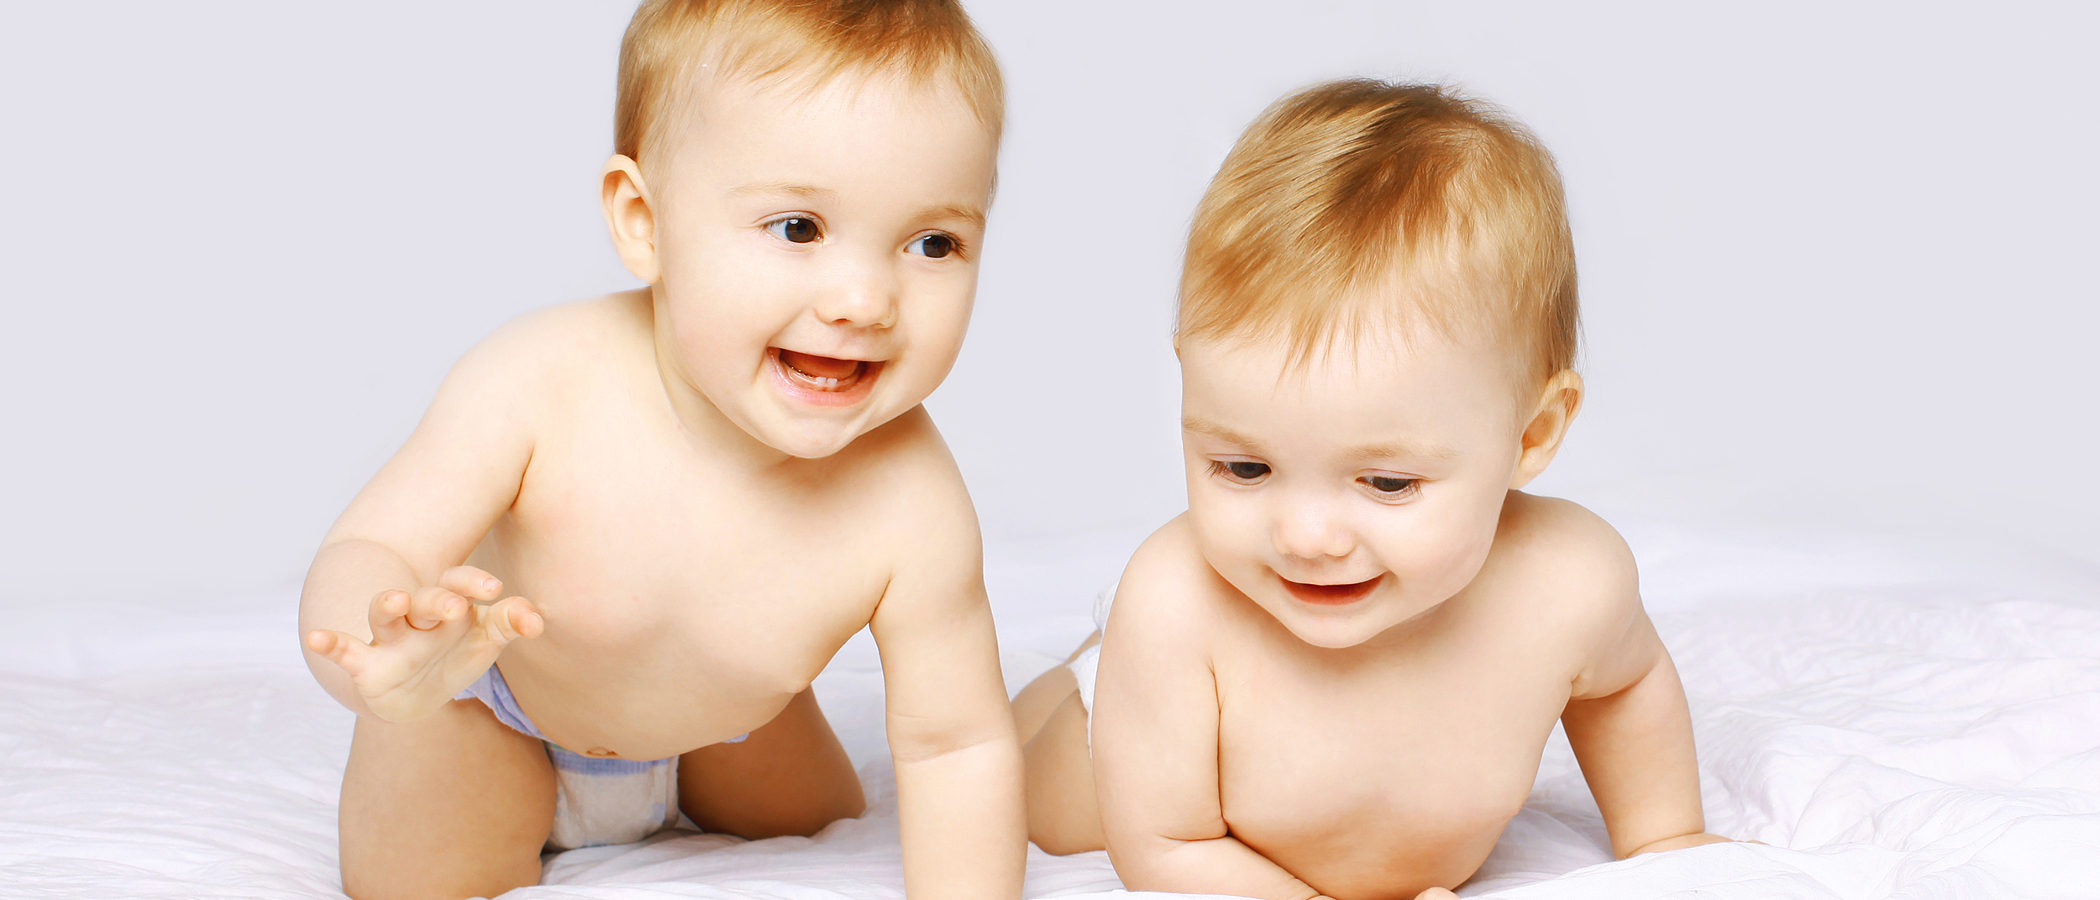 ¿Qué nombres elegir para bebés mellizos niño y niña?